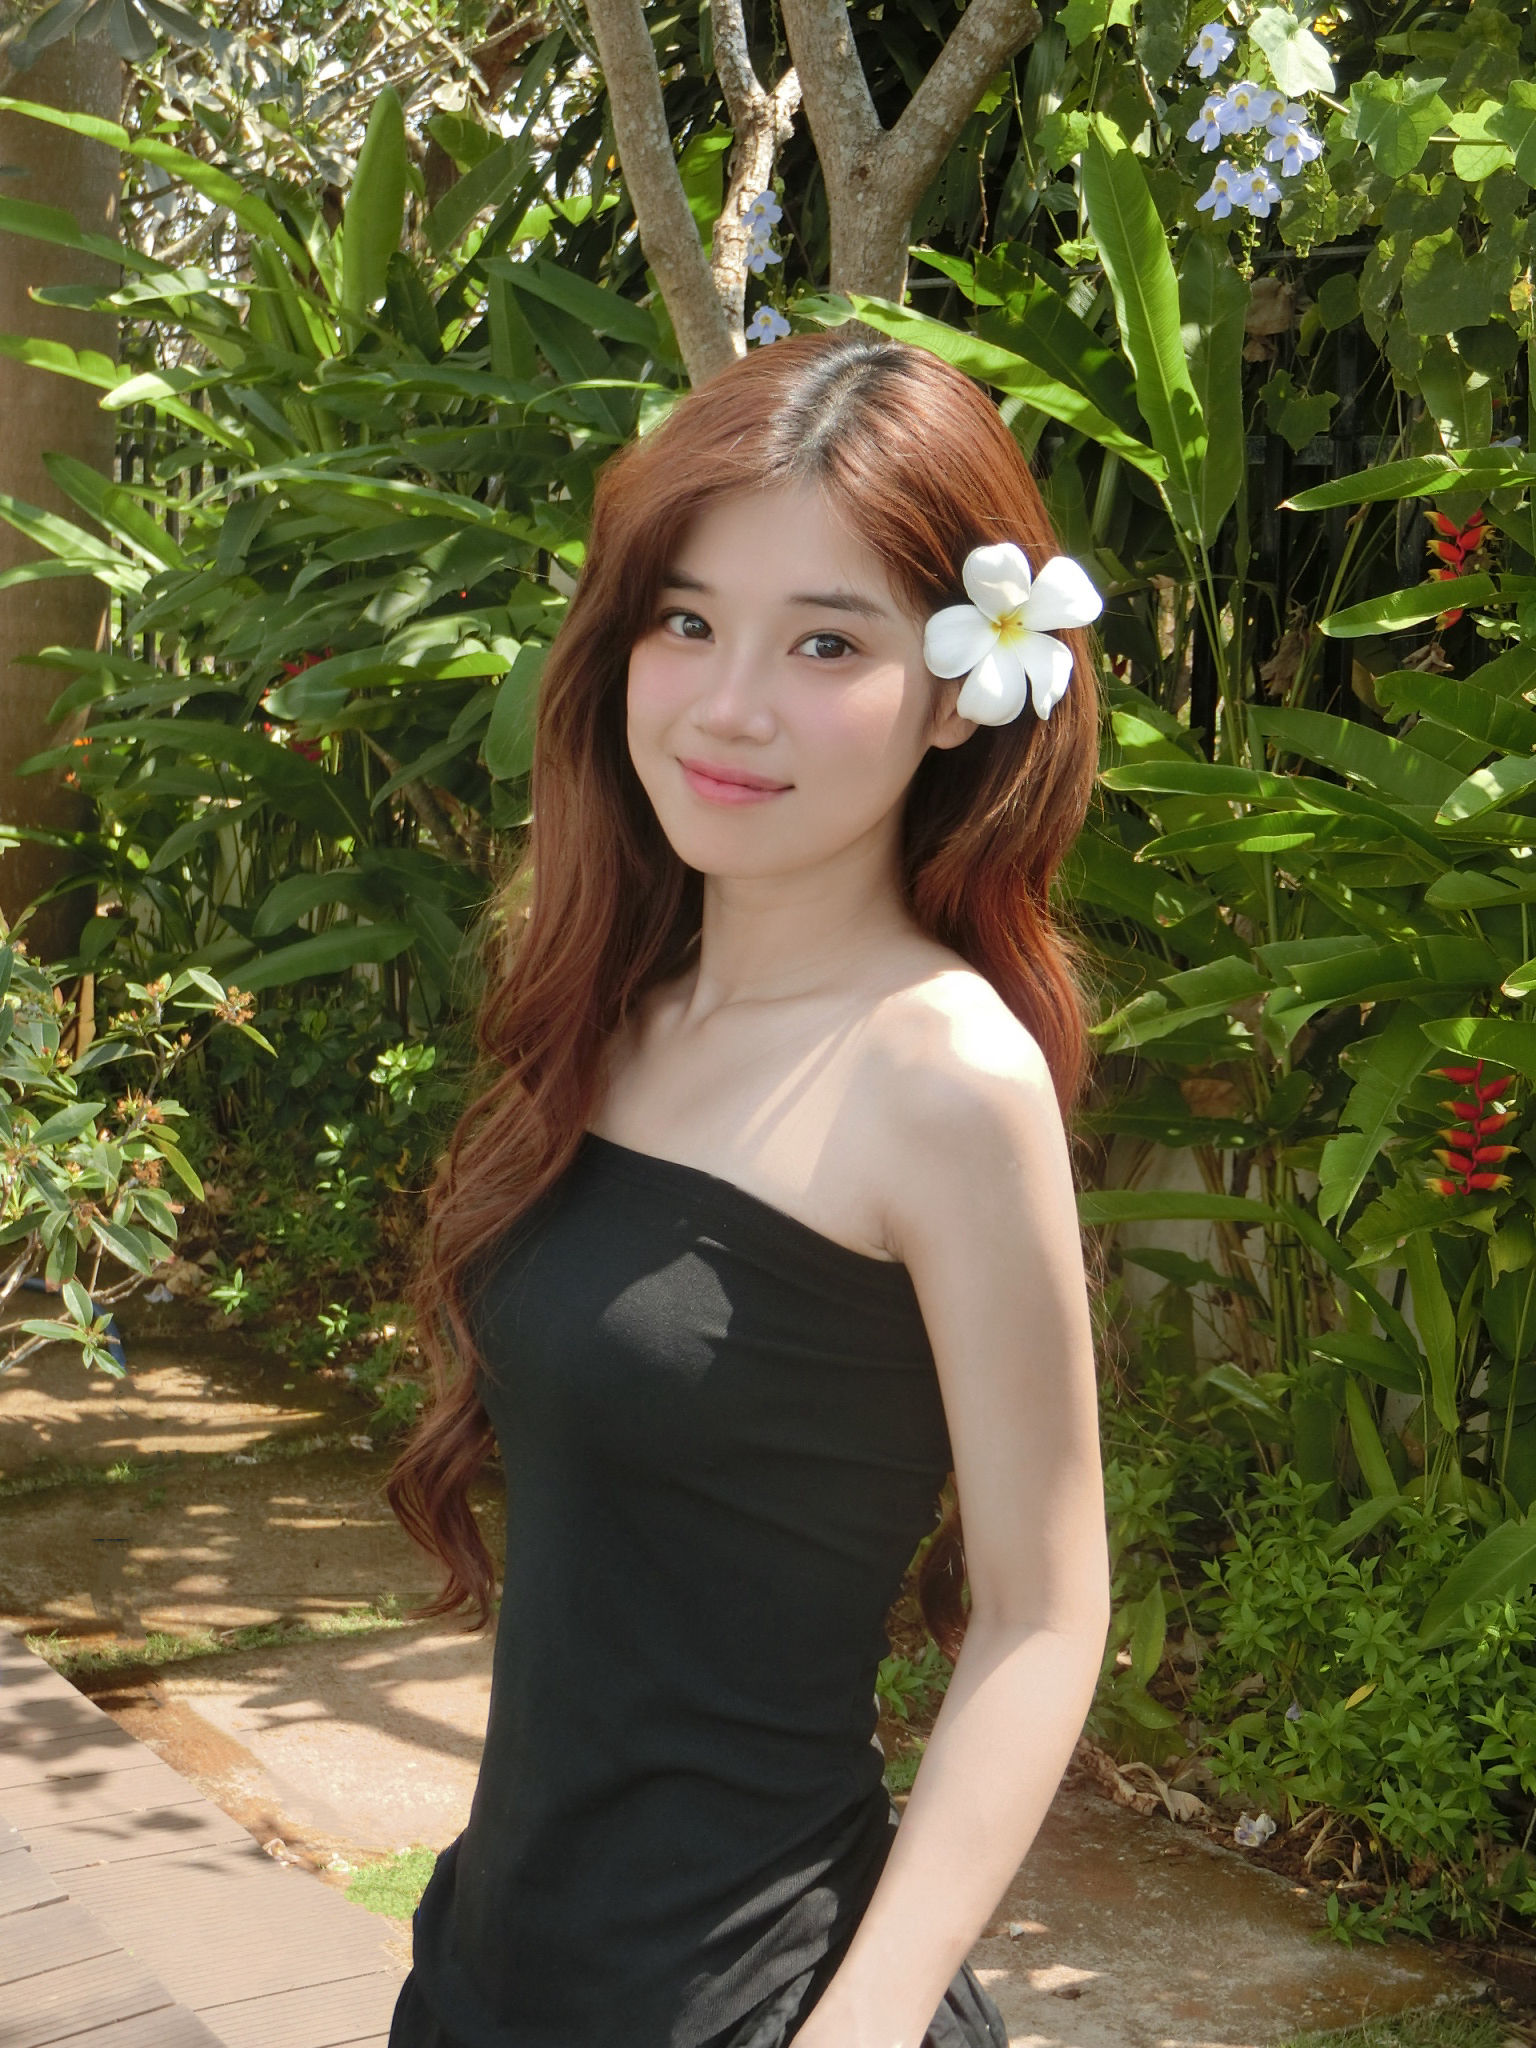 Hoàng Yến Chibi quá bạo ở hậu trường chụp ảnh khiến Ngô Kiến Huy lúng túng, netizen nhận xét 'chắc sợ bạn gái ghen' - ảnh 9